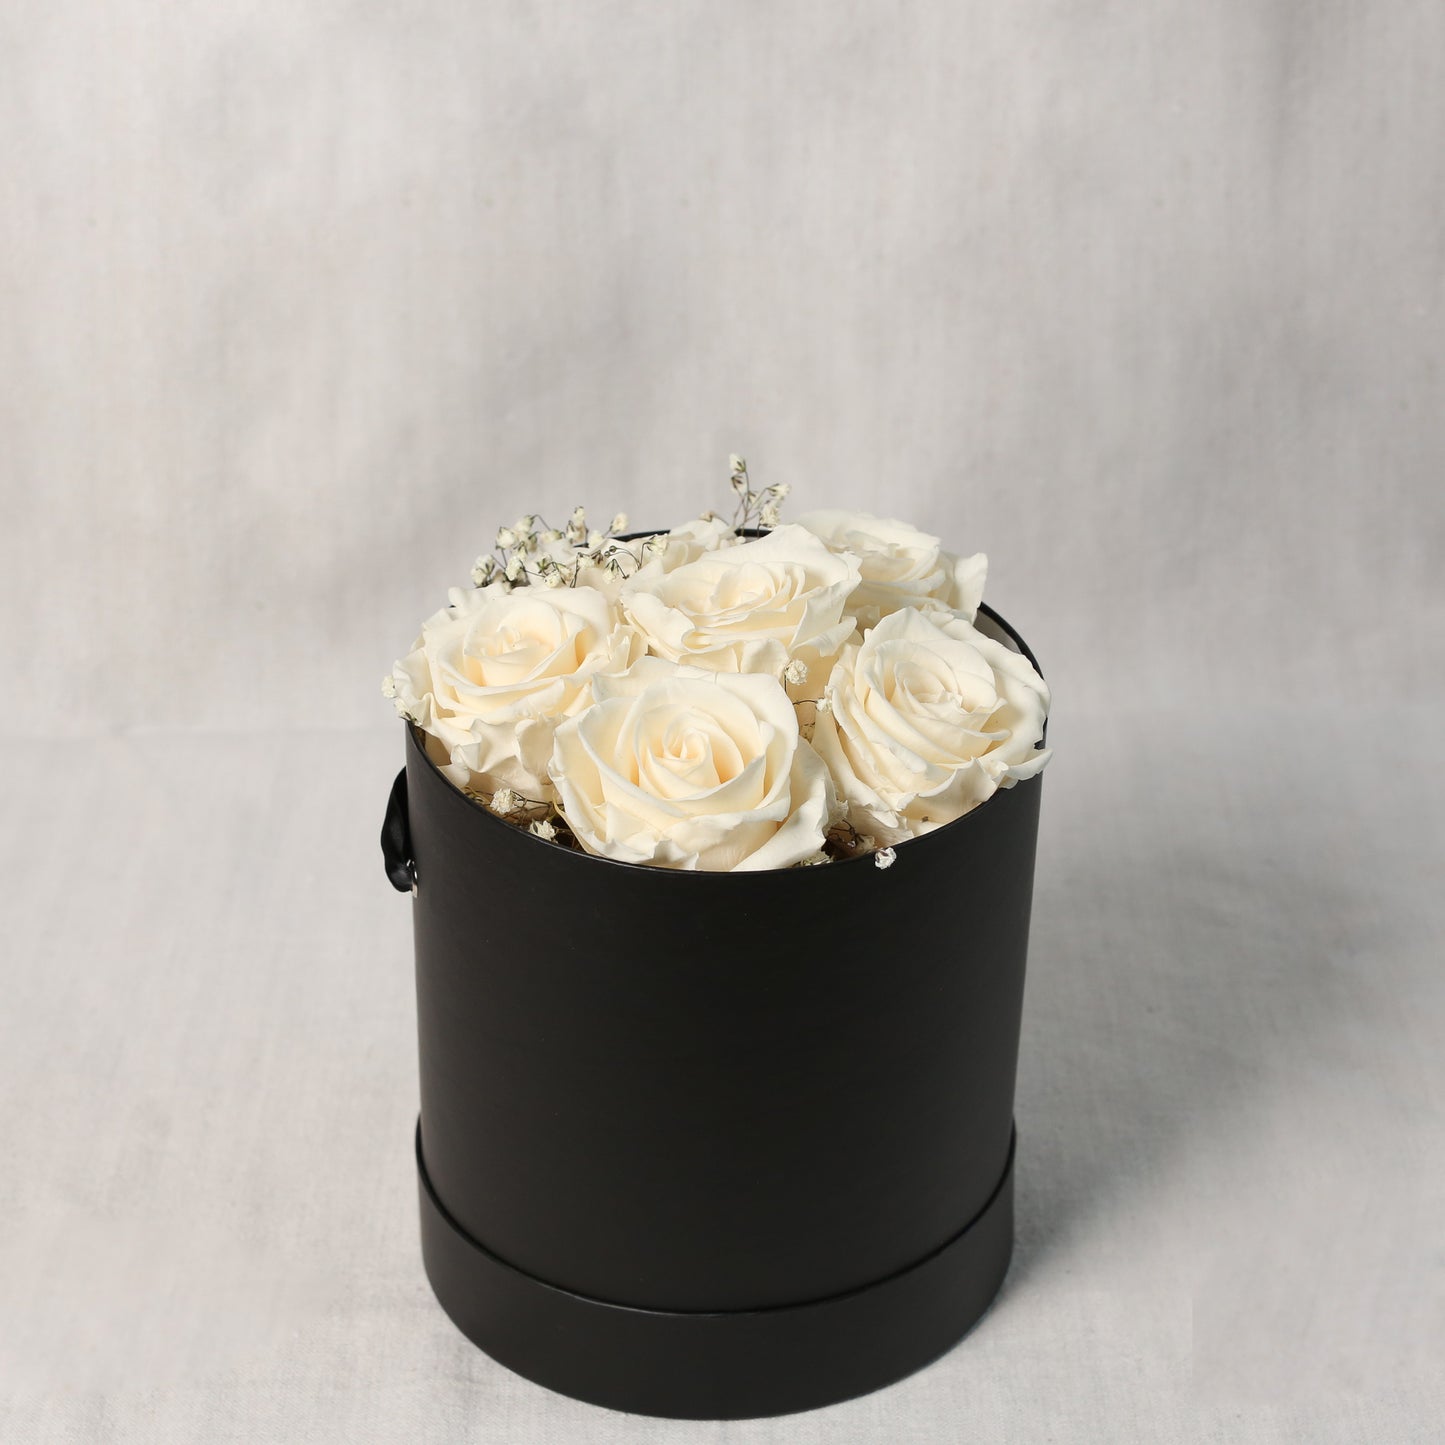 Vorderansicht-eine edle, runde, schwarze Zylinder- Box mit weißen, gefriergetrockneten Rosen und Schleierkraut